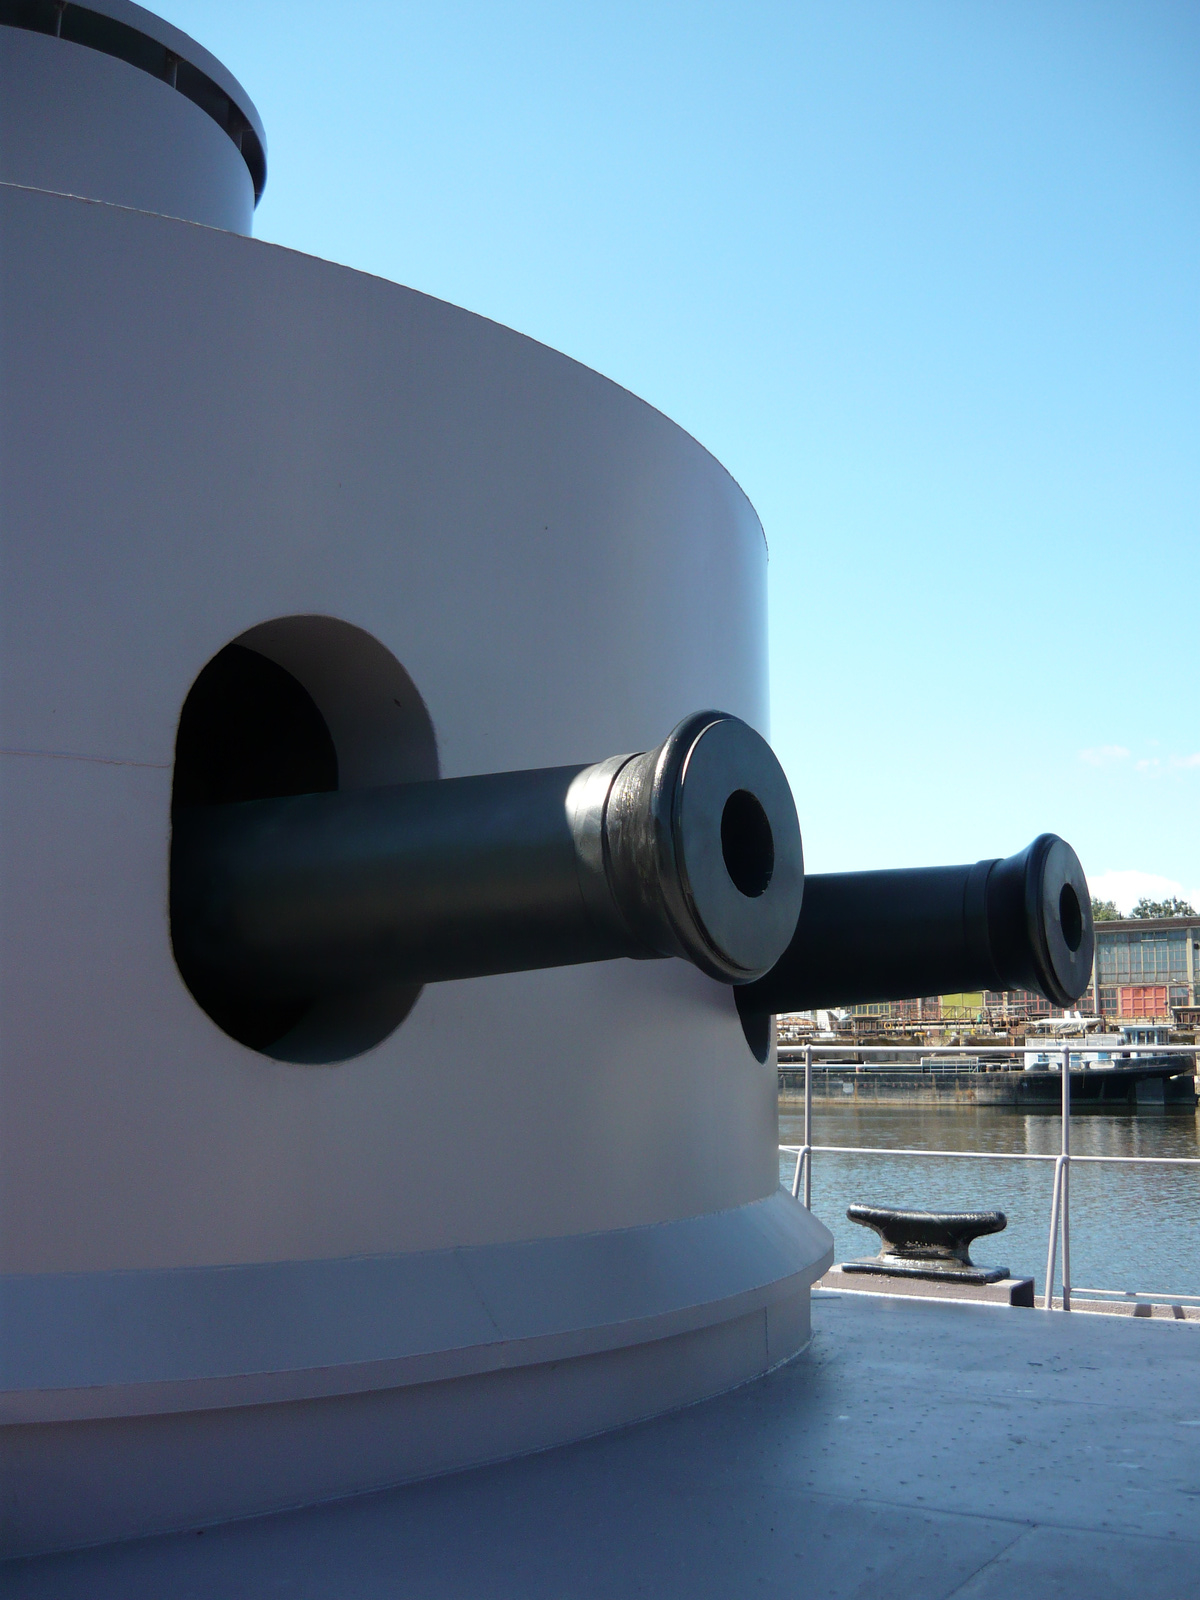 04. Fő tüzérség - Lajta Monitor Múzeumhajó Újpesten